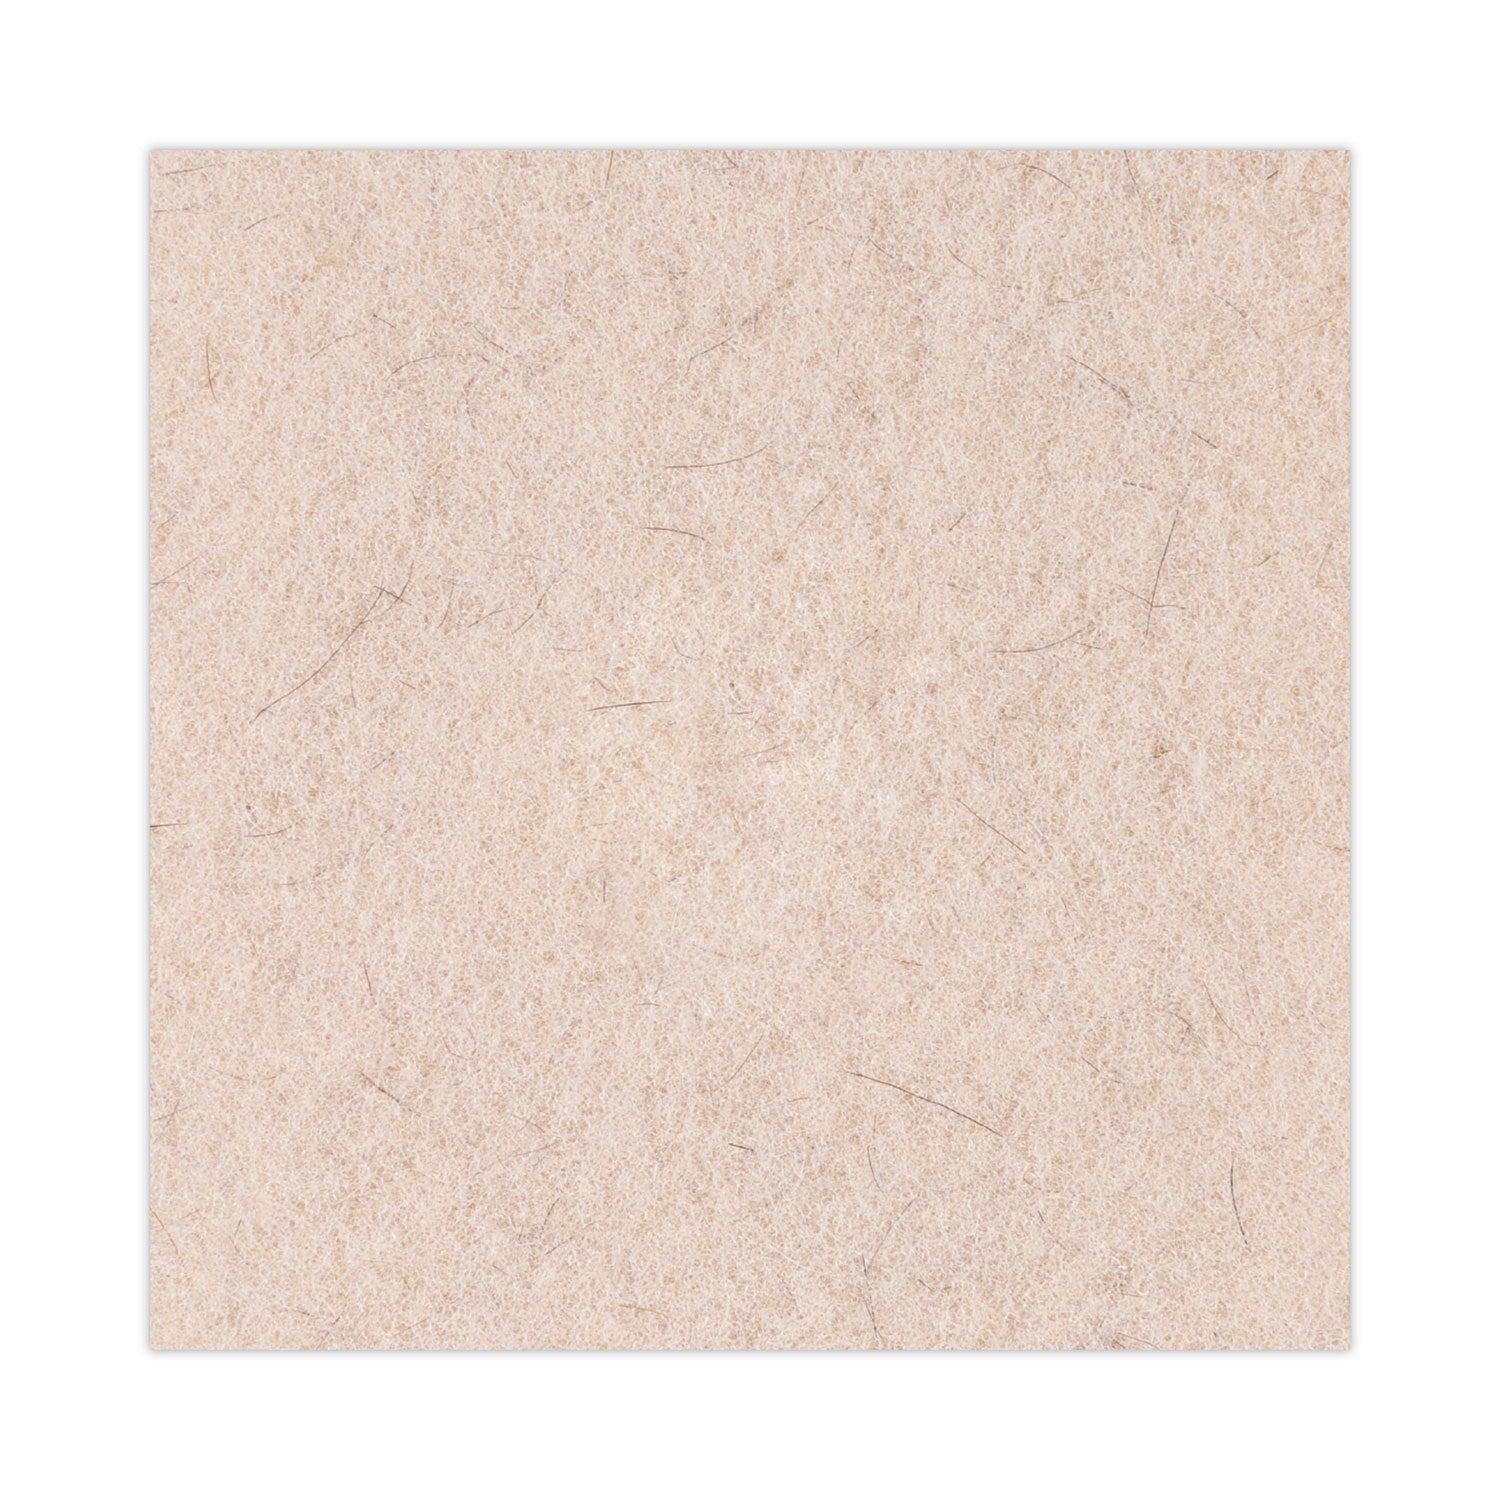 Natural Hog Hair Burnishing Floor Pads, 20" Diameter, Tan, 5/Carton - 